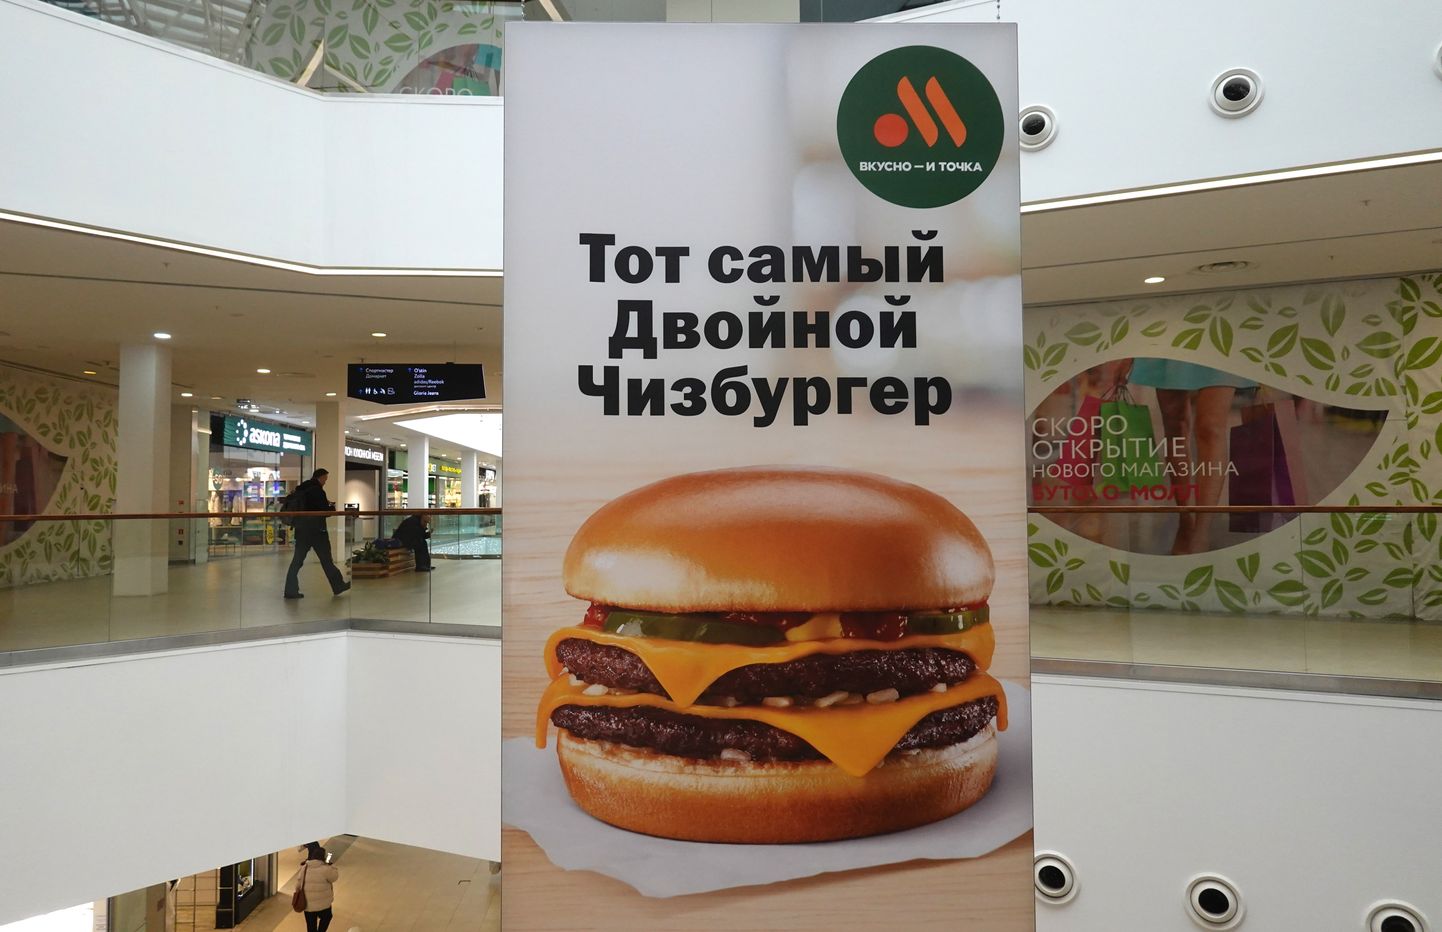 Бургер в переименнованной российской сети McDonalds, которая теперь называется "Вкусно и точка".